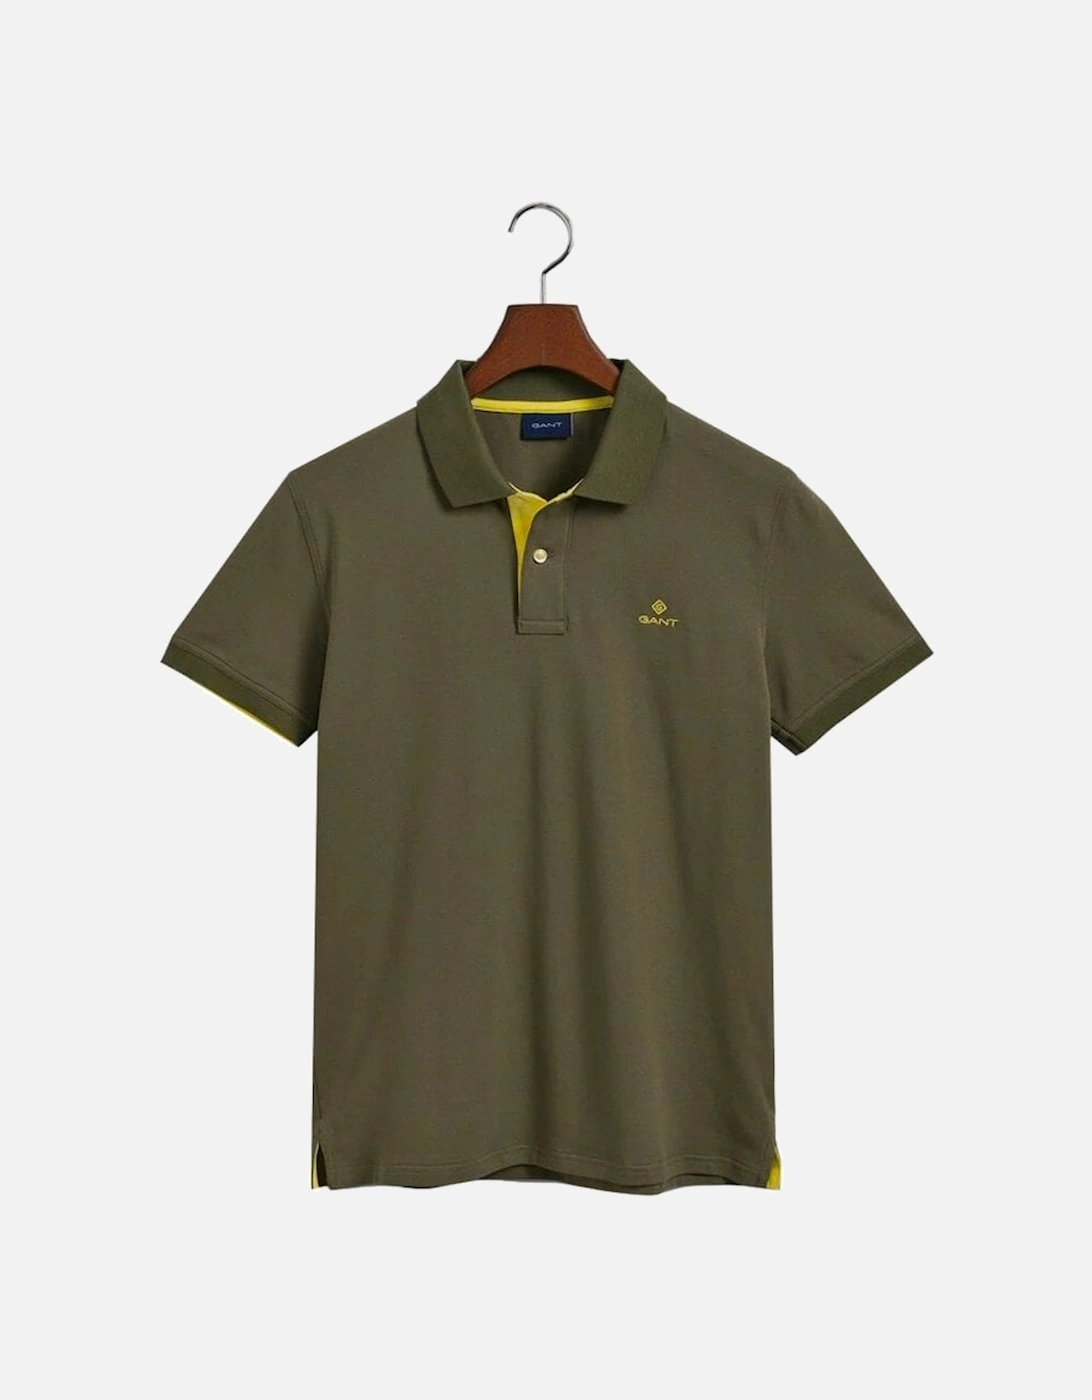 Contrast Collar Pique Short Sleeve Polo Shirt Racing Green, 2 of 1